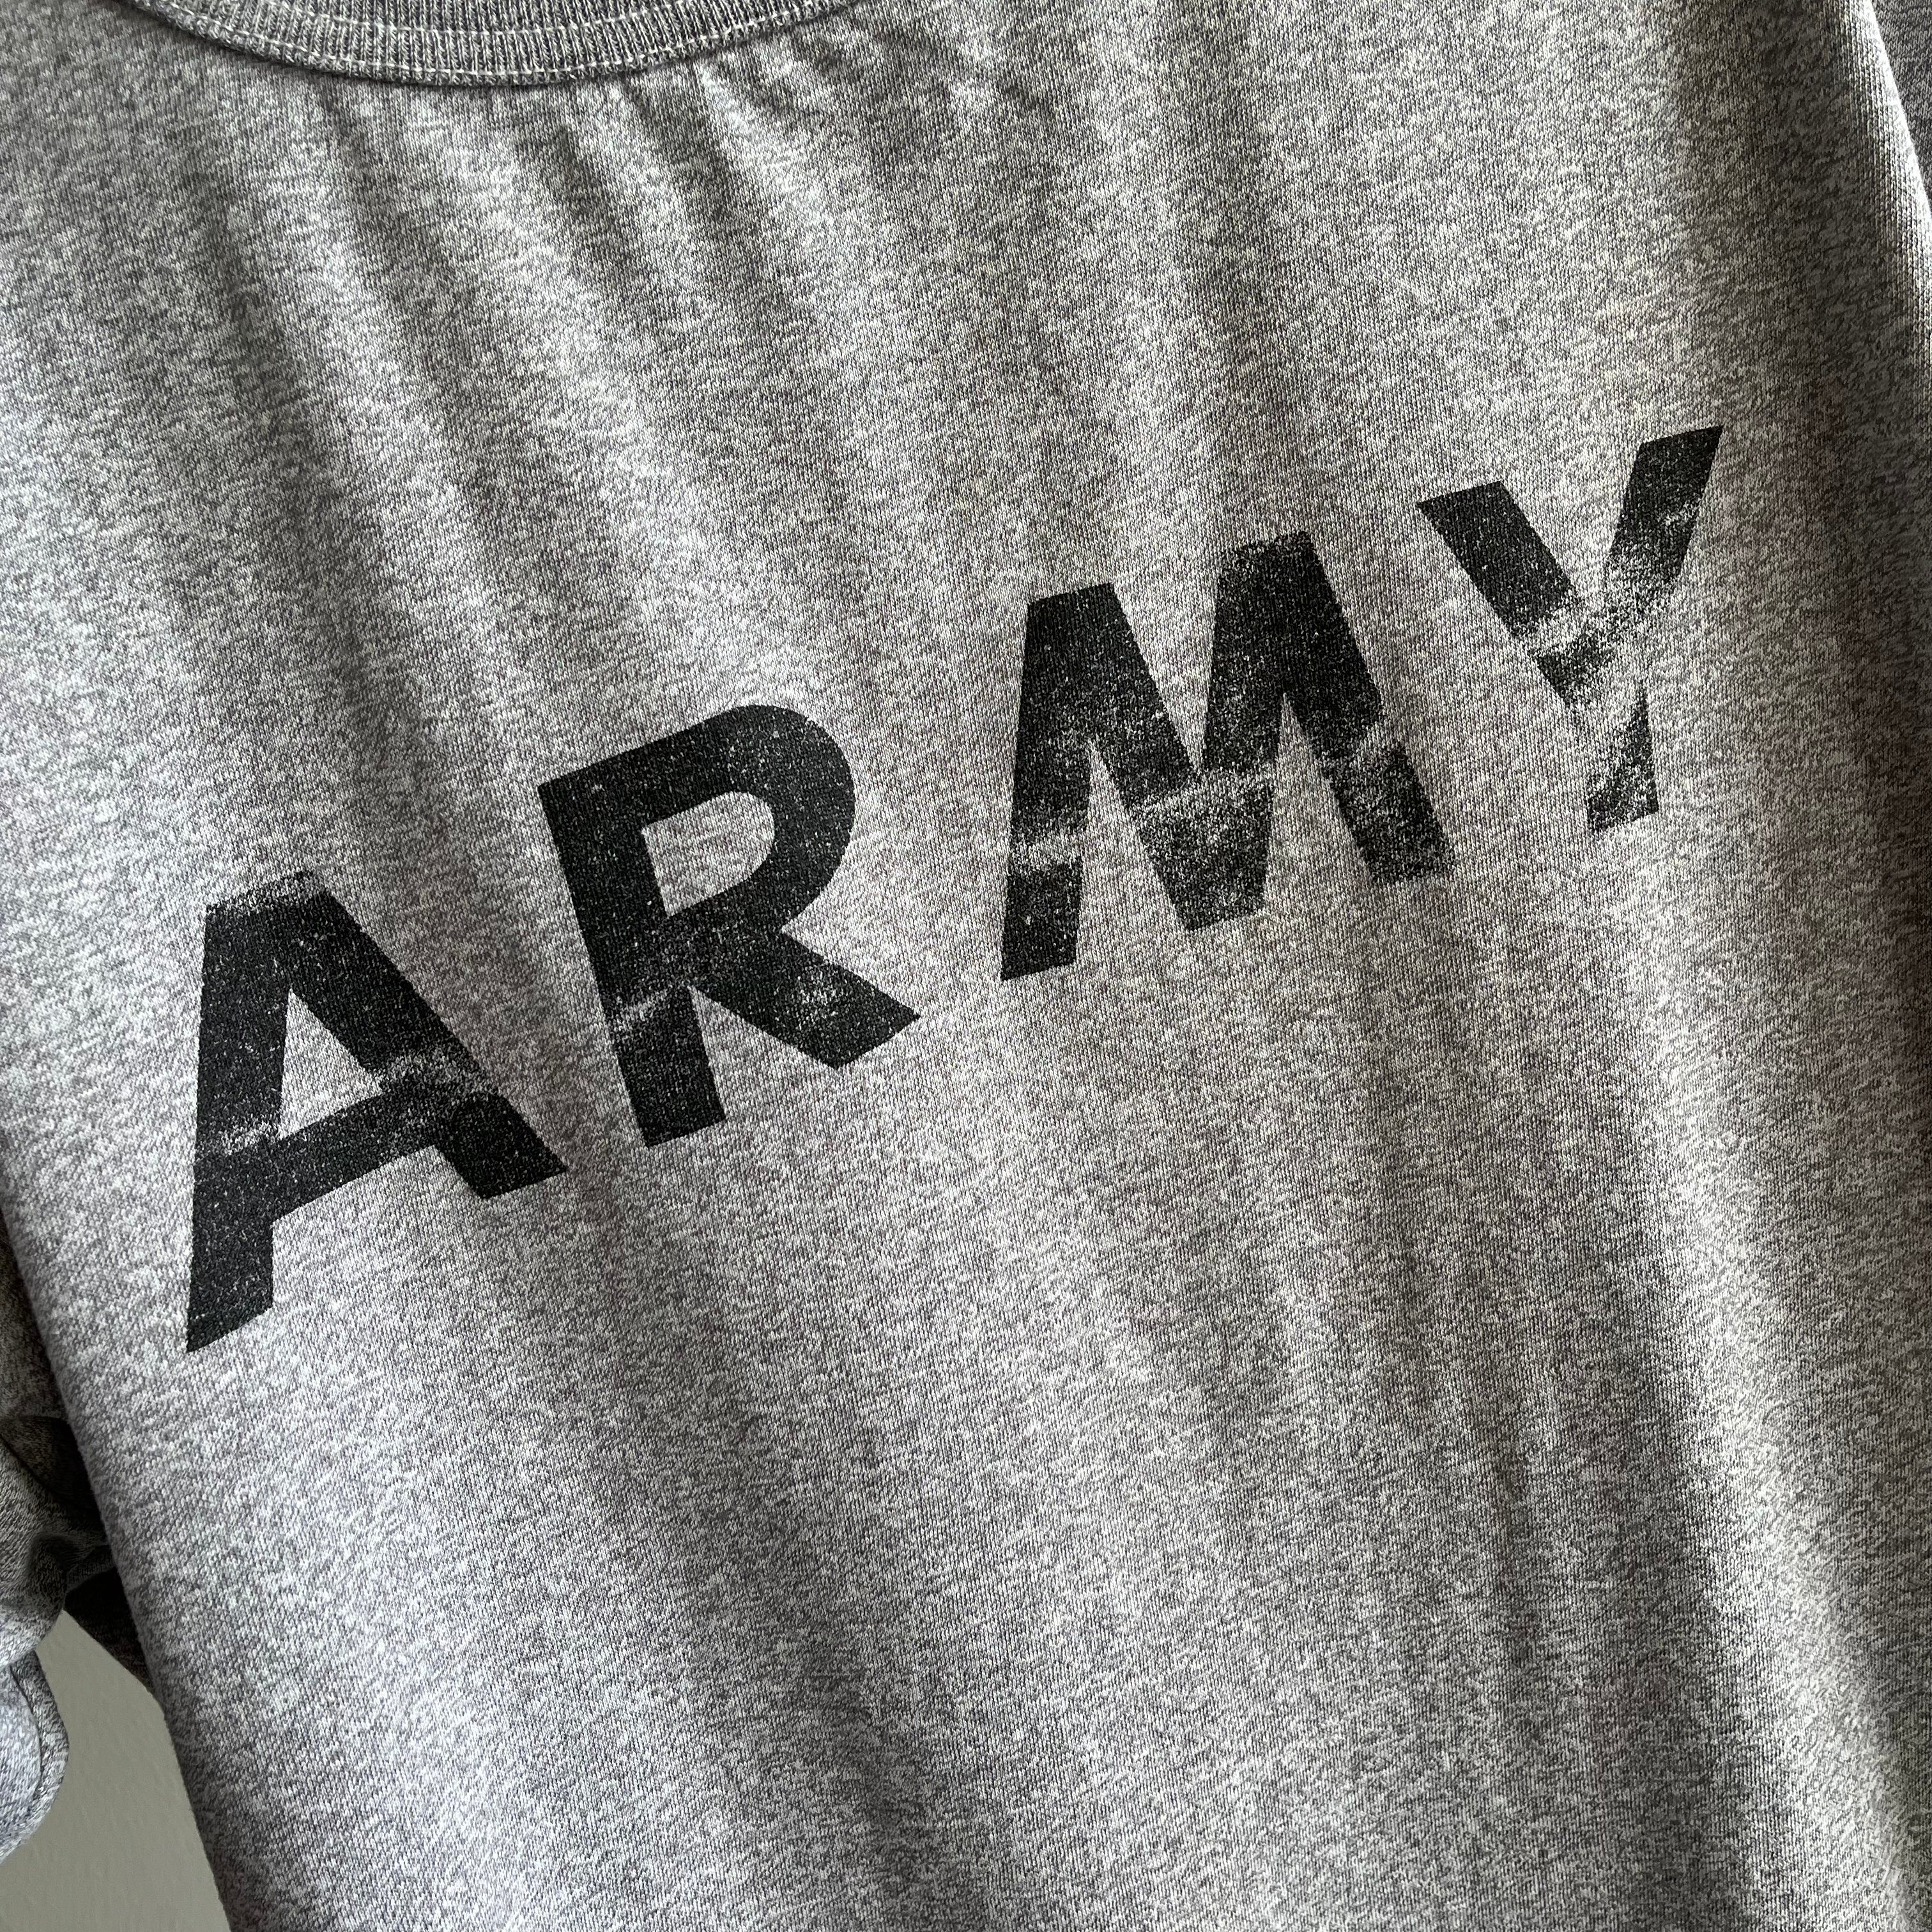 1991 T-shirt ARMY super carré surdimensionné